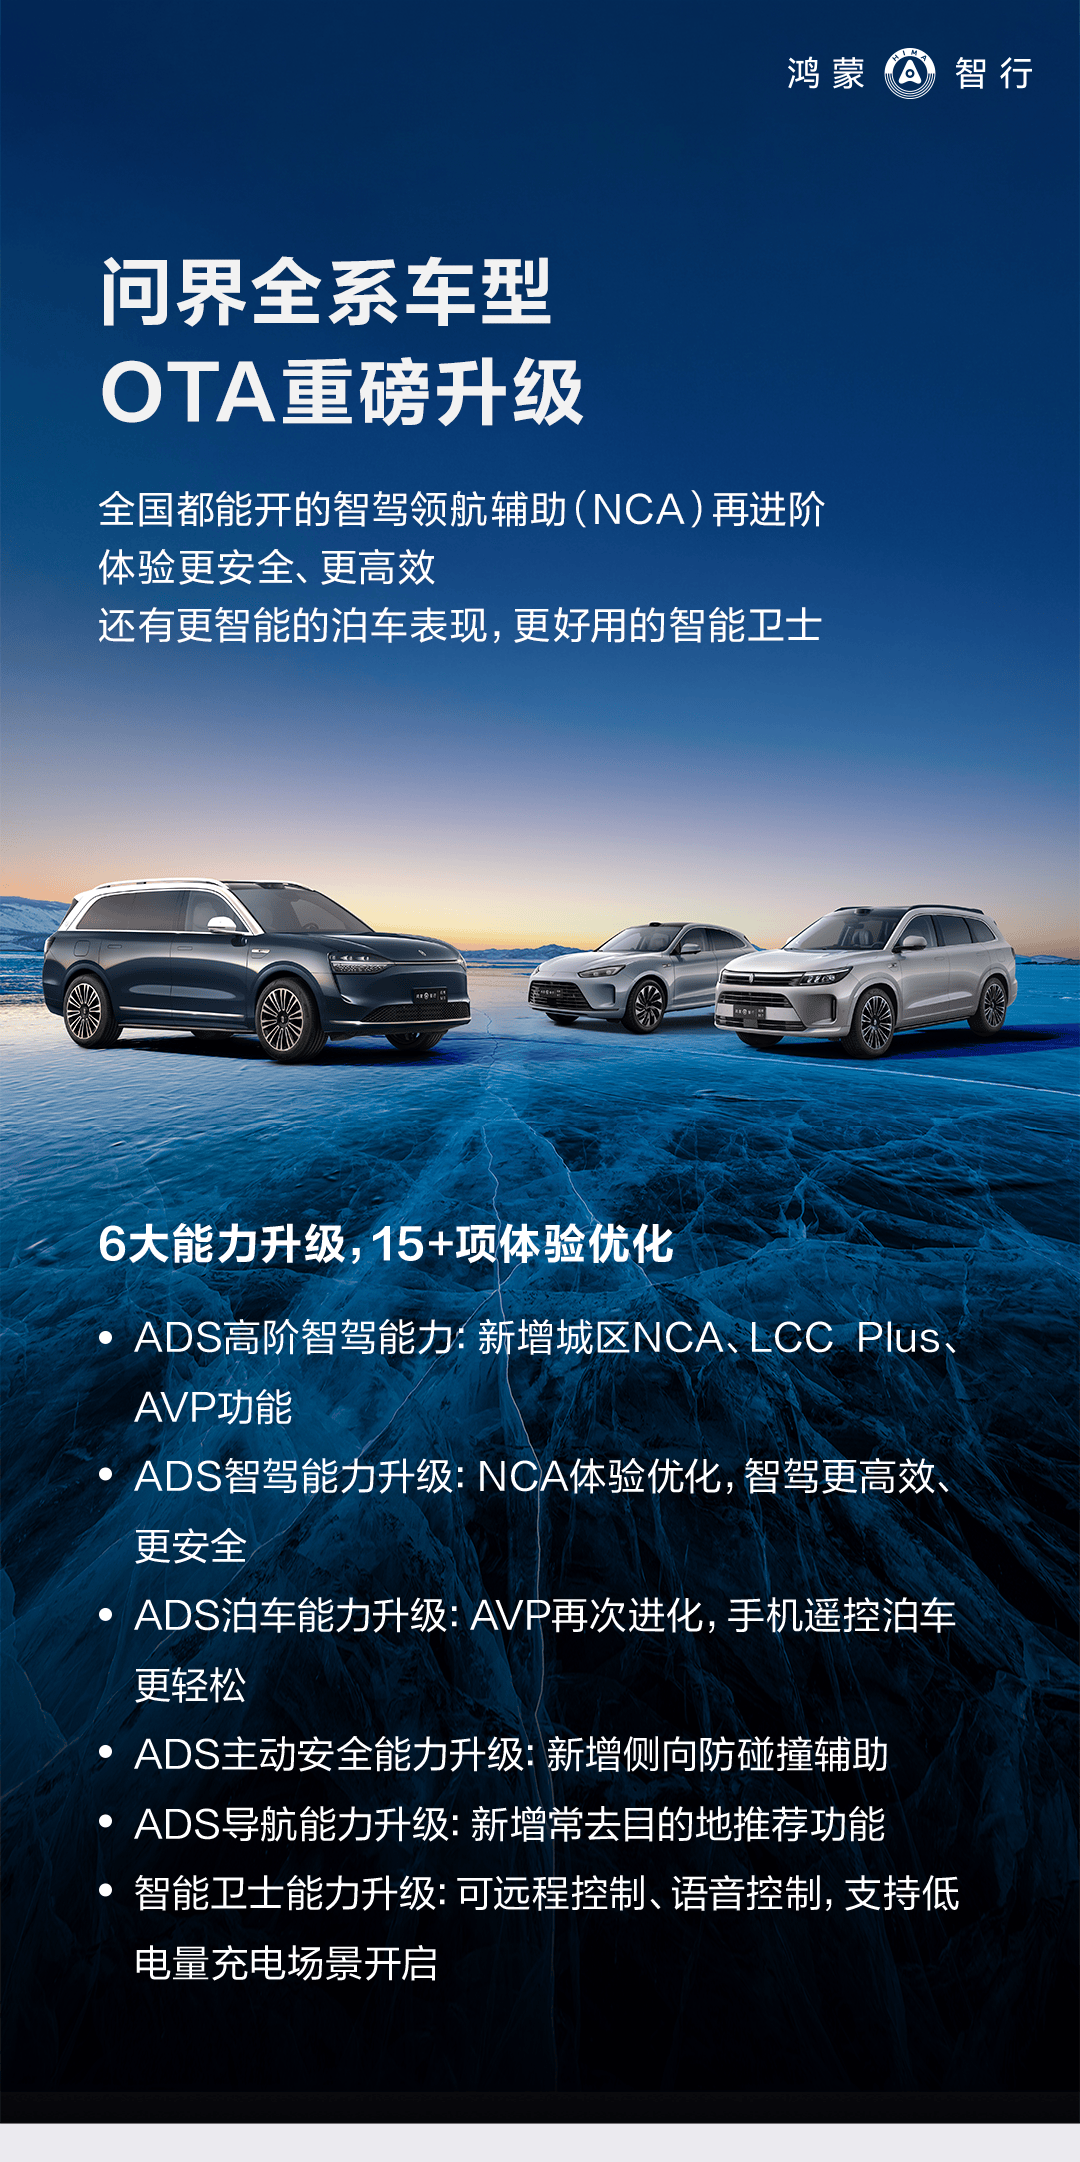 新增多项智能驾驶功能并要求全球所有车型启动OTA升级_搜狐汽车_ Sohu.com